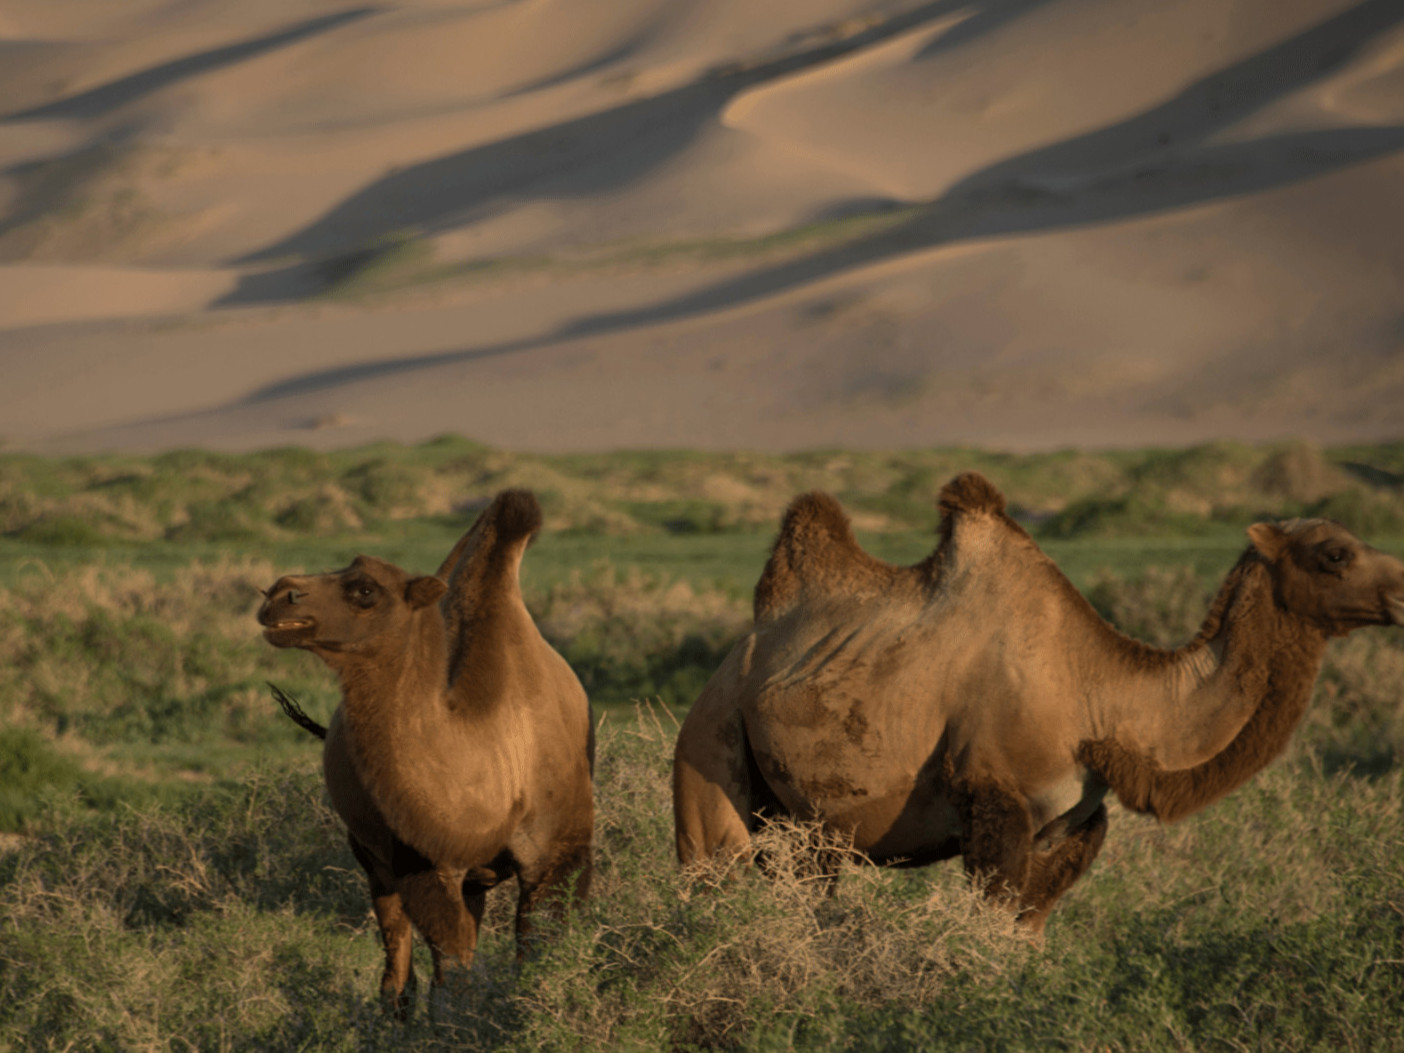 ГАДНЫН ХЭВЛЭЛ: 2023 онд устах аюулд орсон Азийн 10 амьтанд Монголын хавтгай тэмээ болон цасны ирвэс багтсаныг онцолжээ